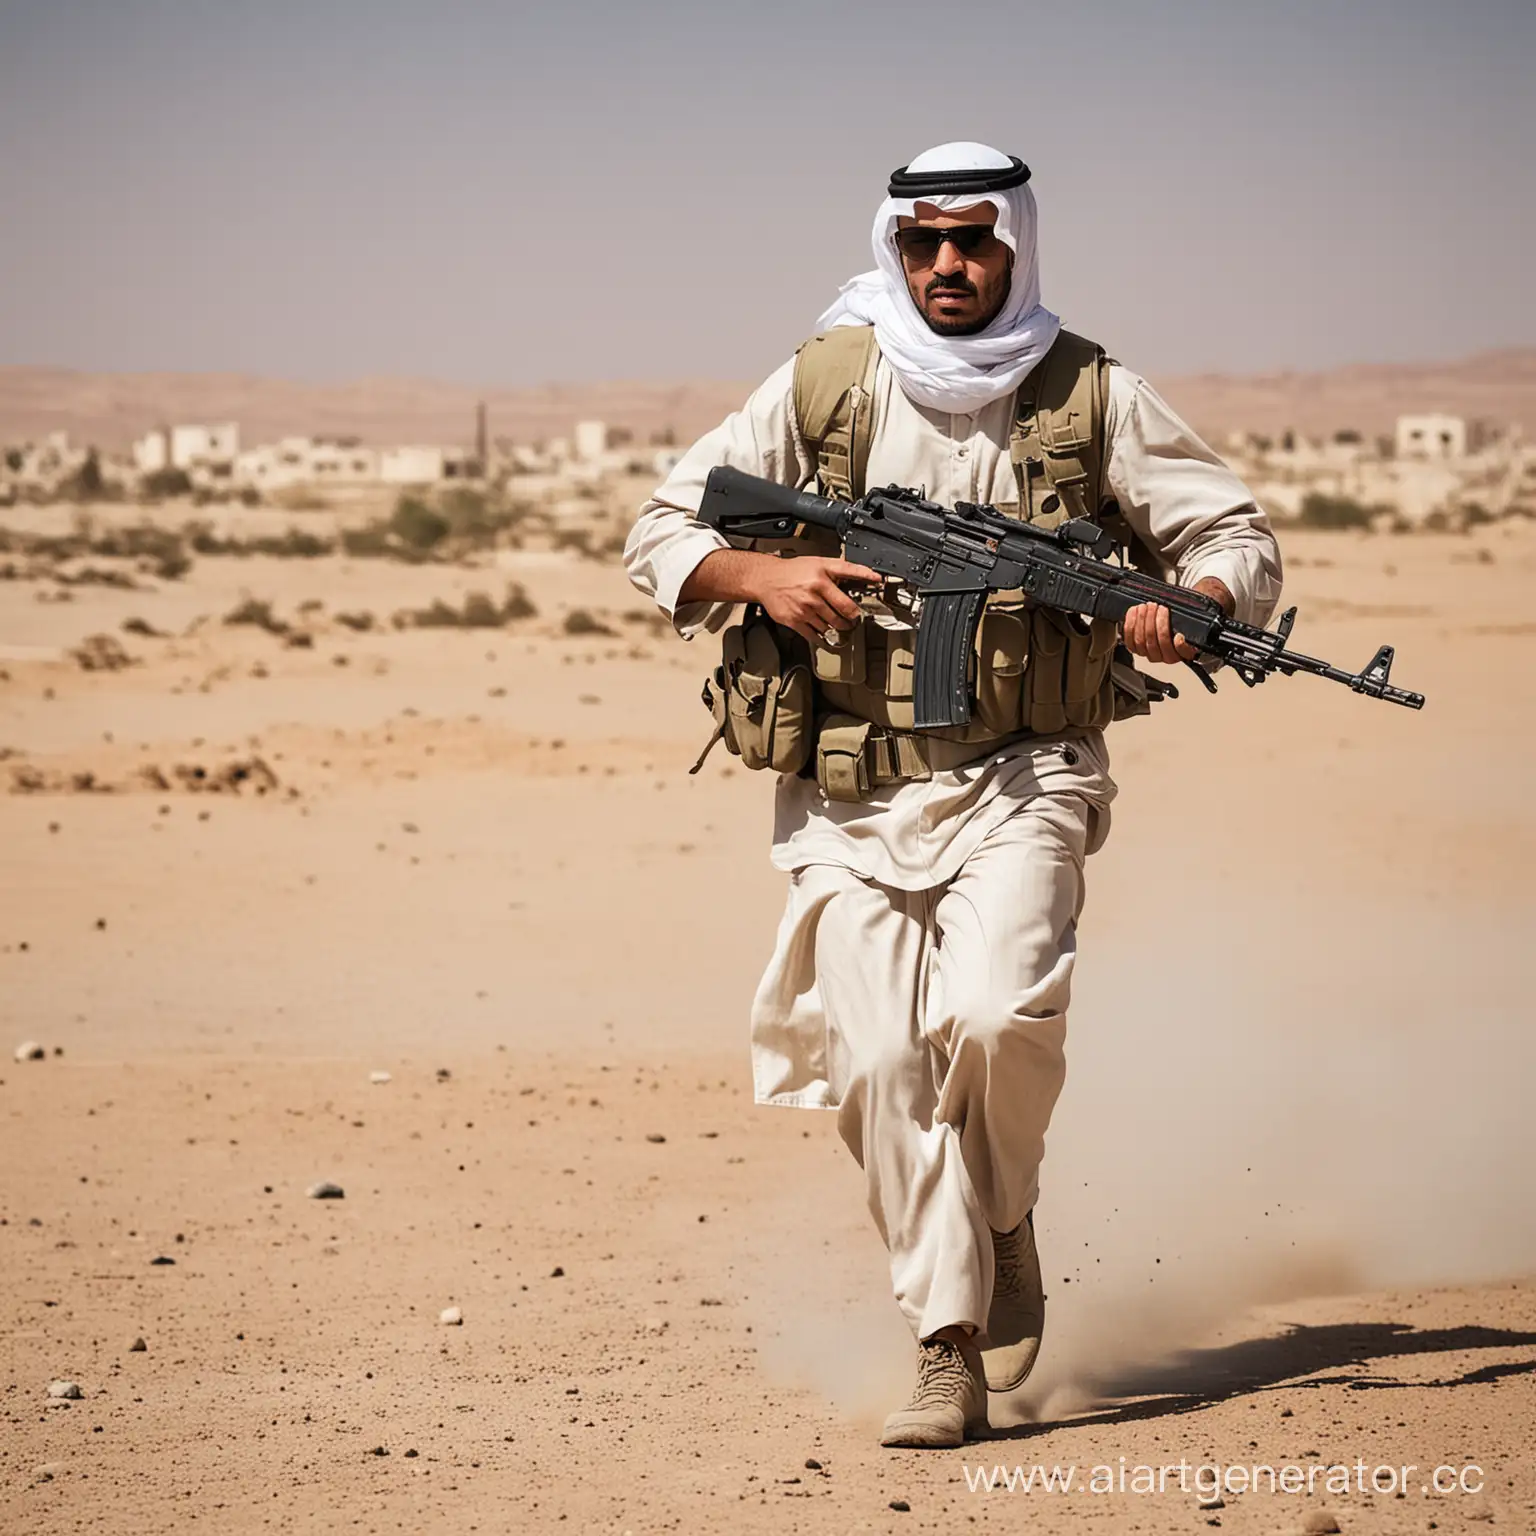 Arab-Man-Running-with-Kalashnikov-Rifle